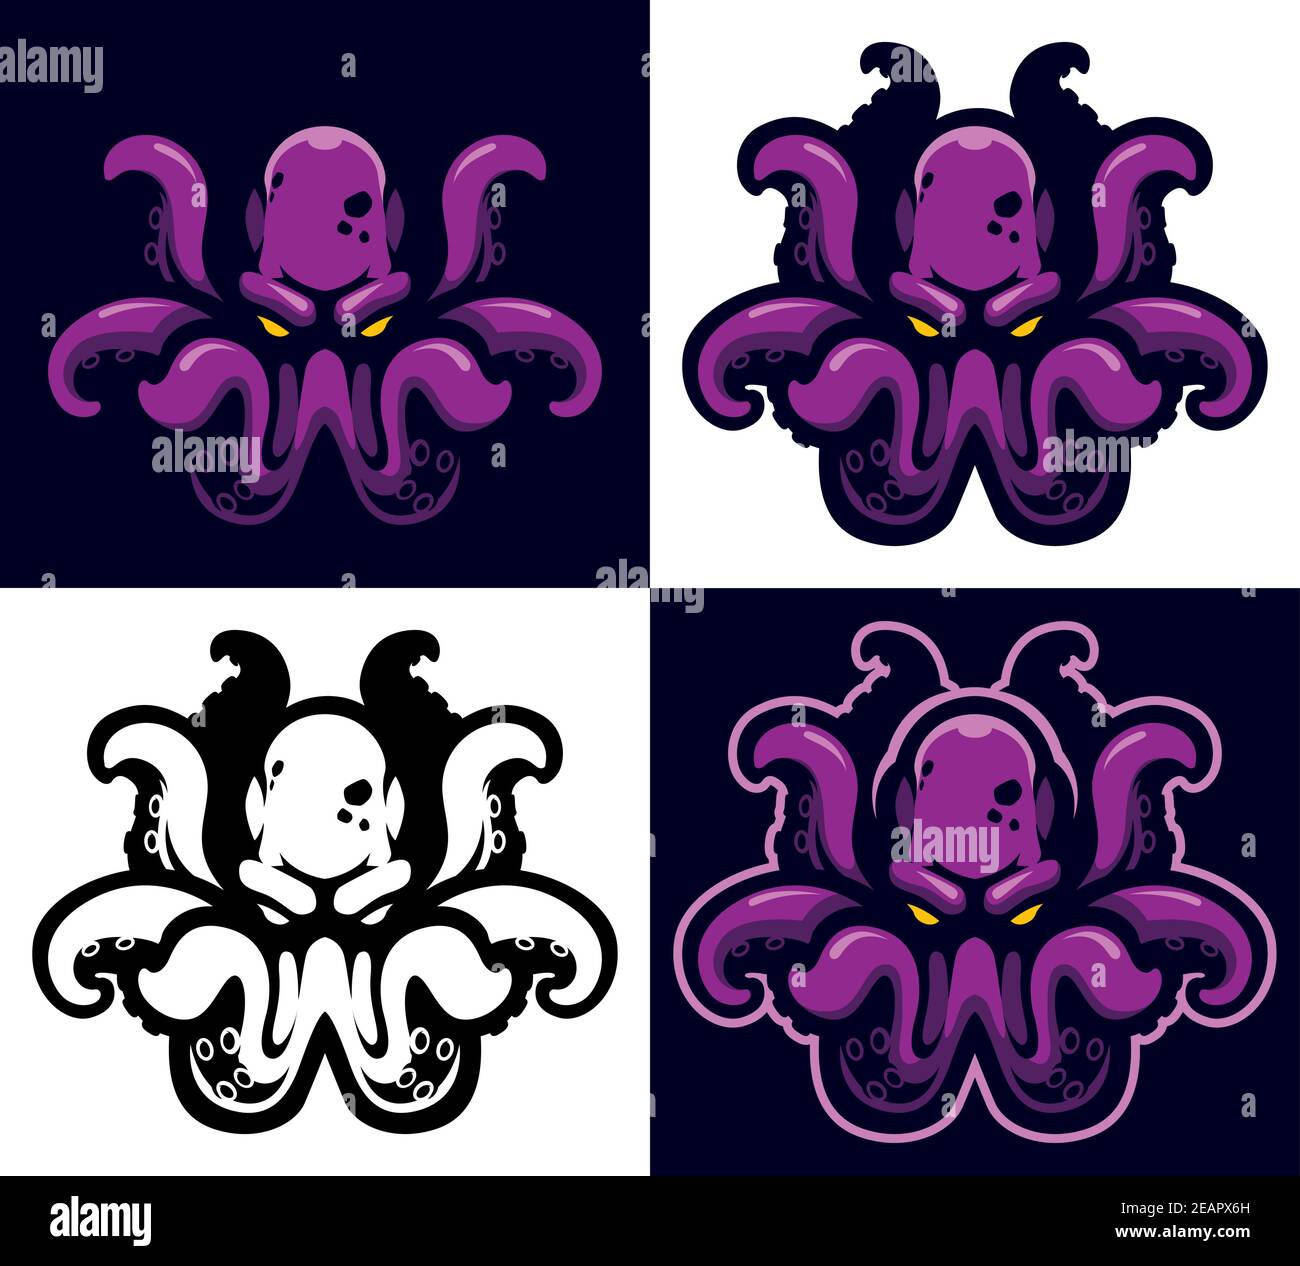 Symbole Kraken Mascot Illustration de Vecteur